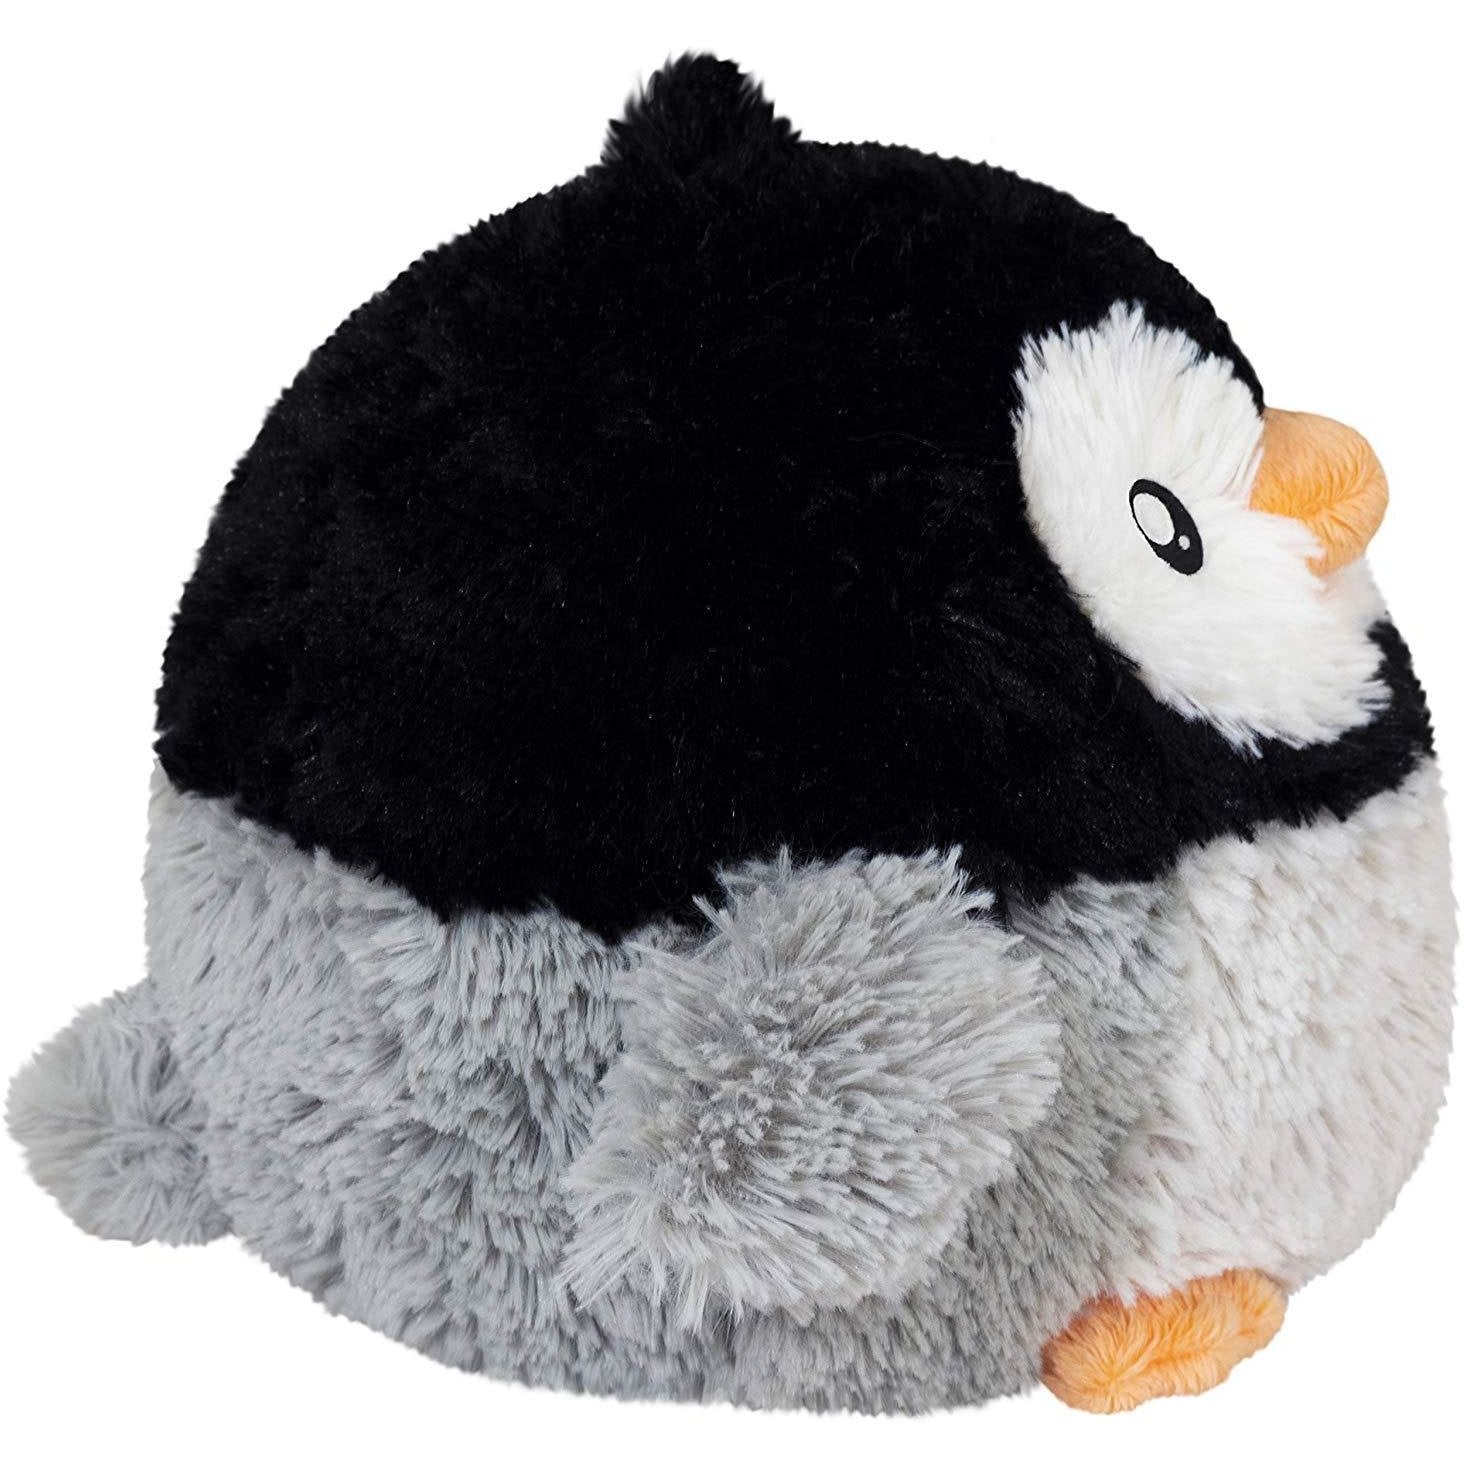 squishables penguin